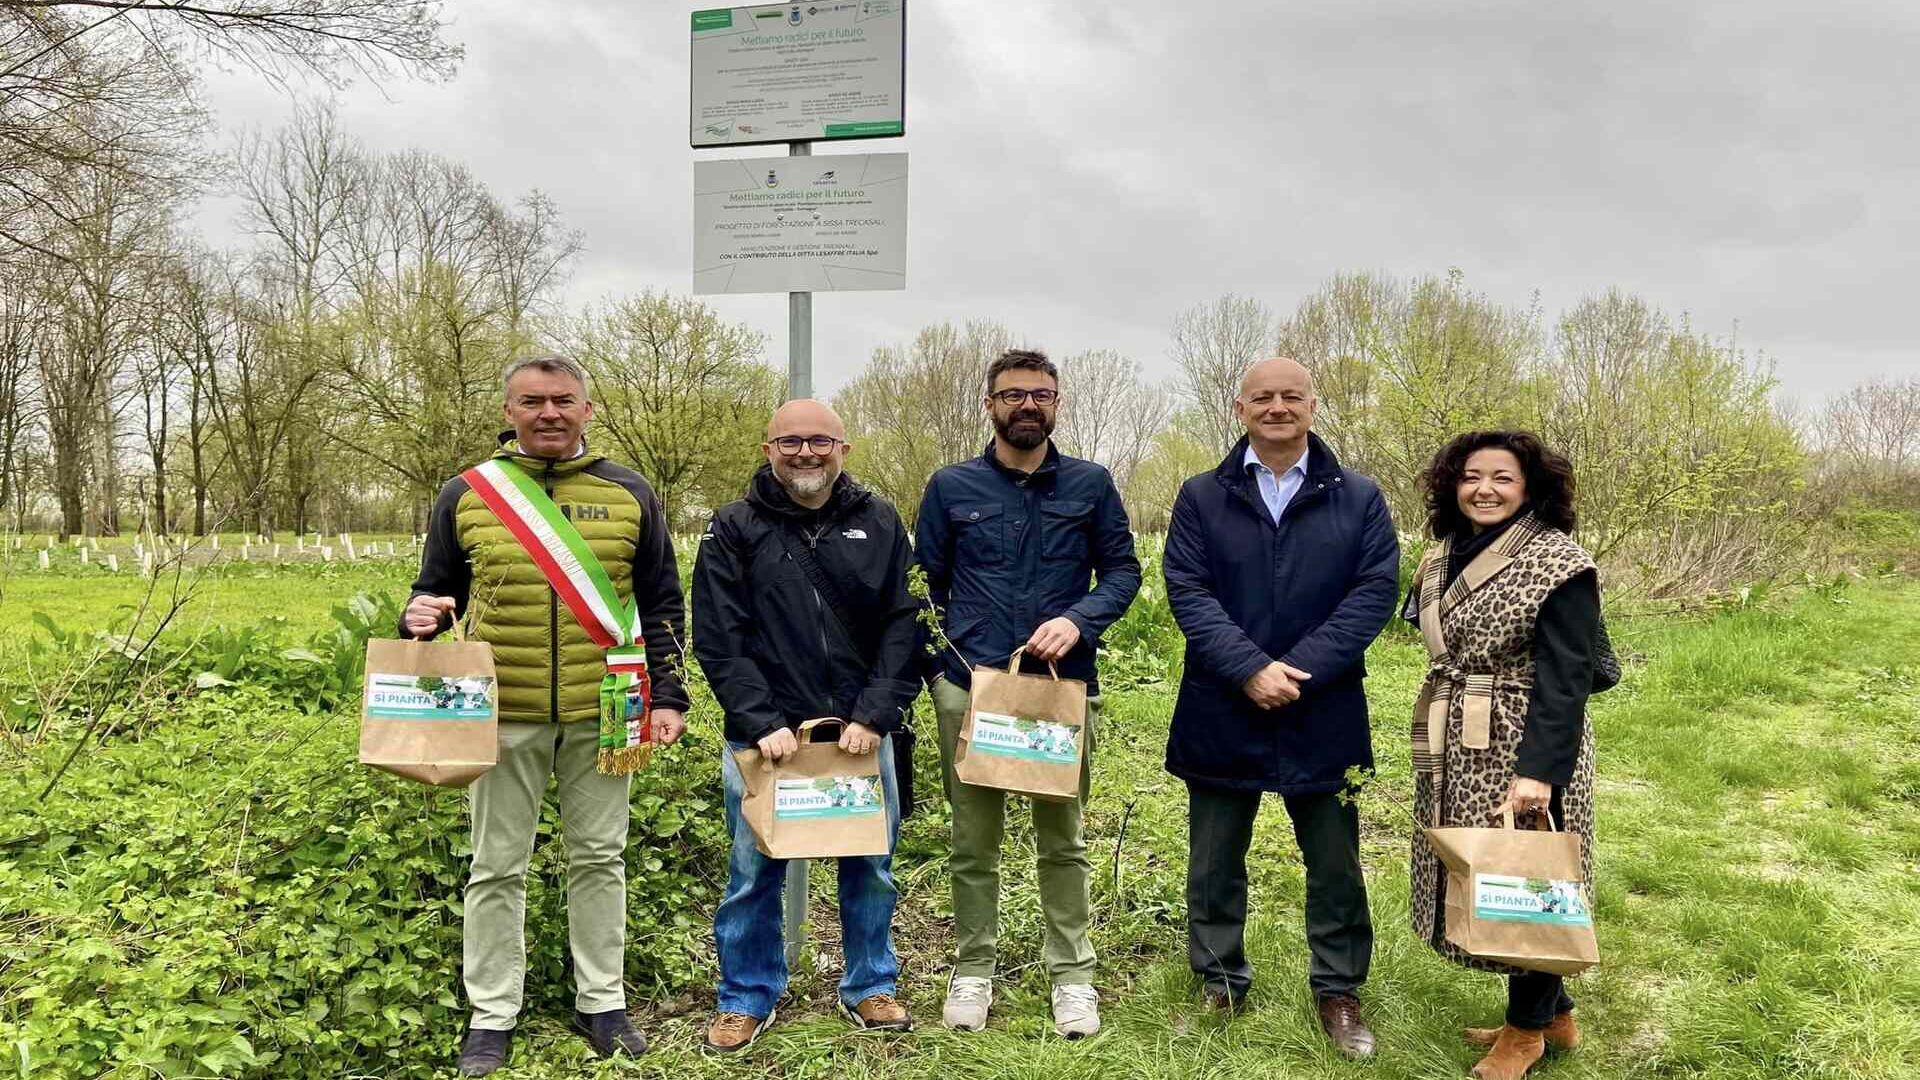 Kentsel yeniden ağaçlandırma: Sissa Trecasali'de (Parma) 1084 ağaç ve çalılık ve 9.000 metrekare yüzey alanına sahip iki yeni kent çevresi ormanı açıldı.